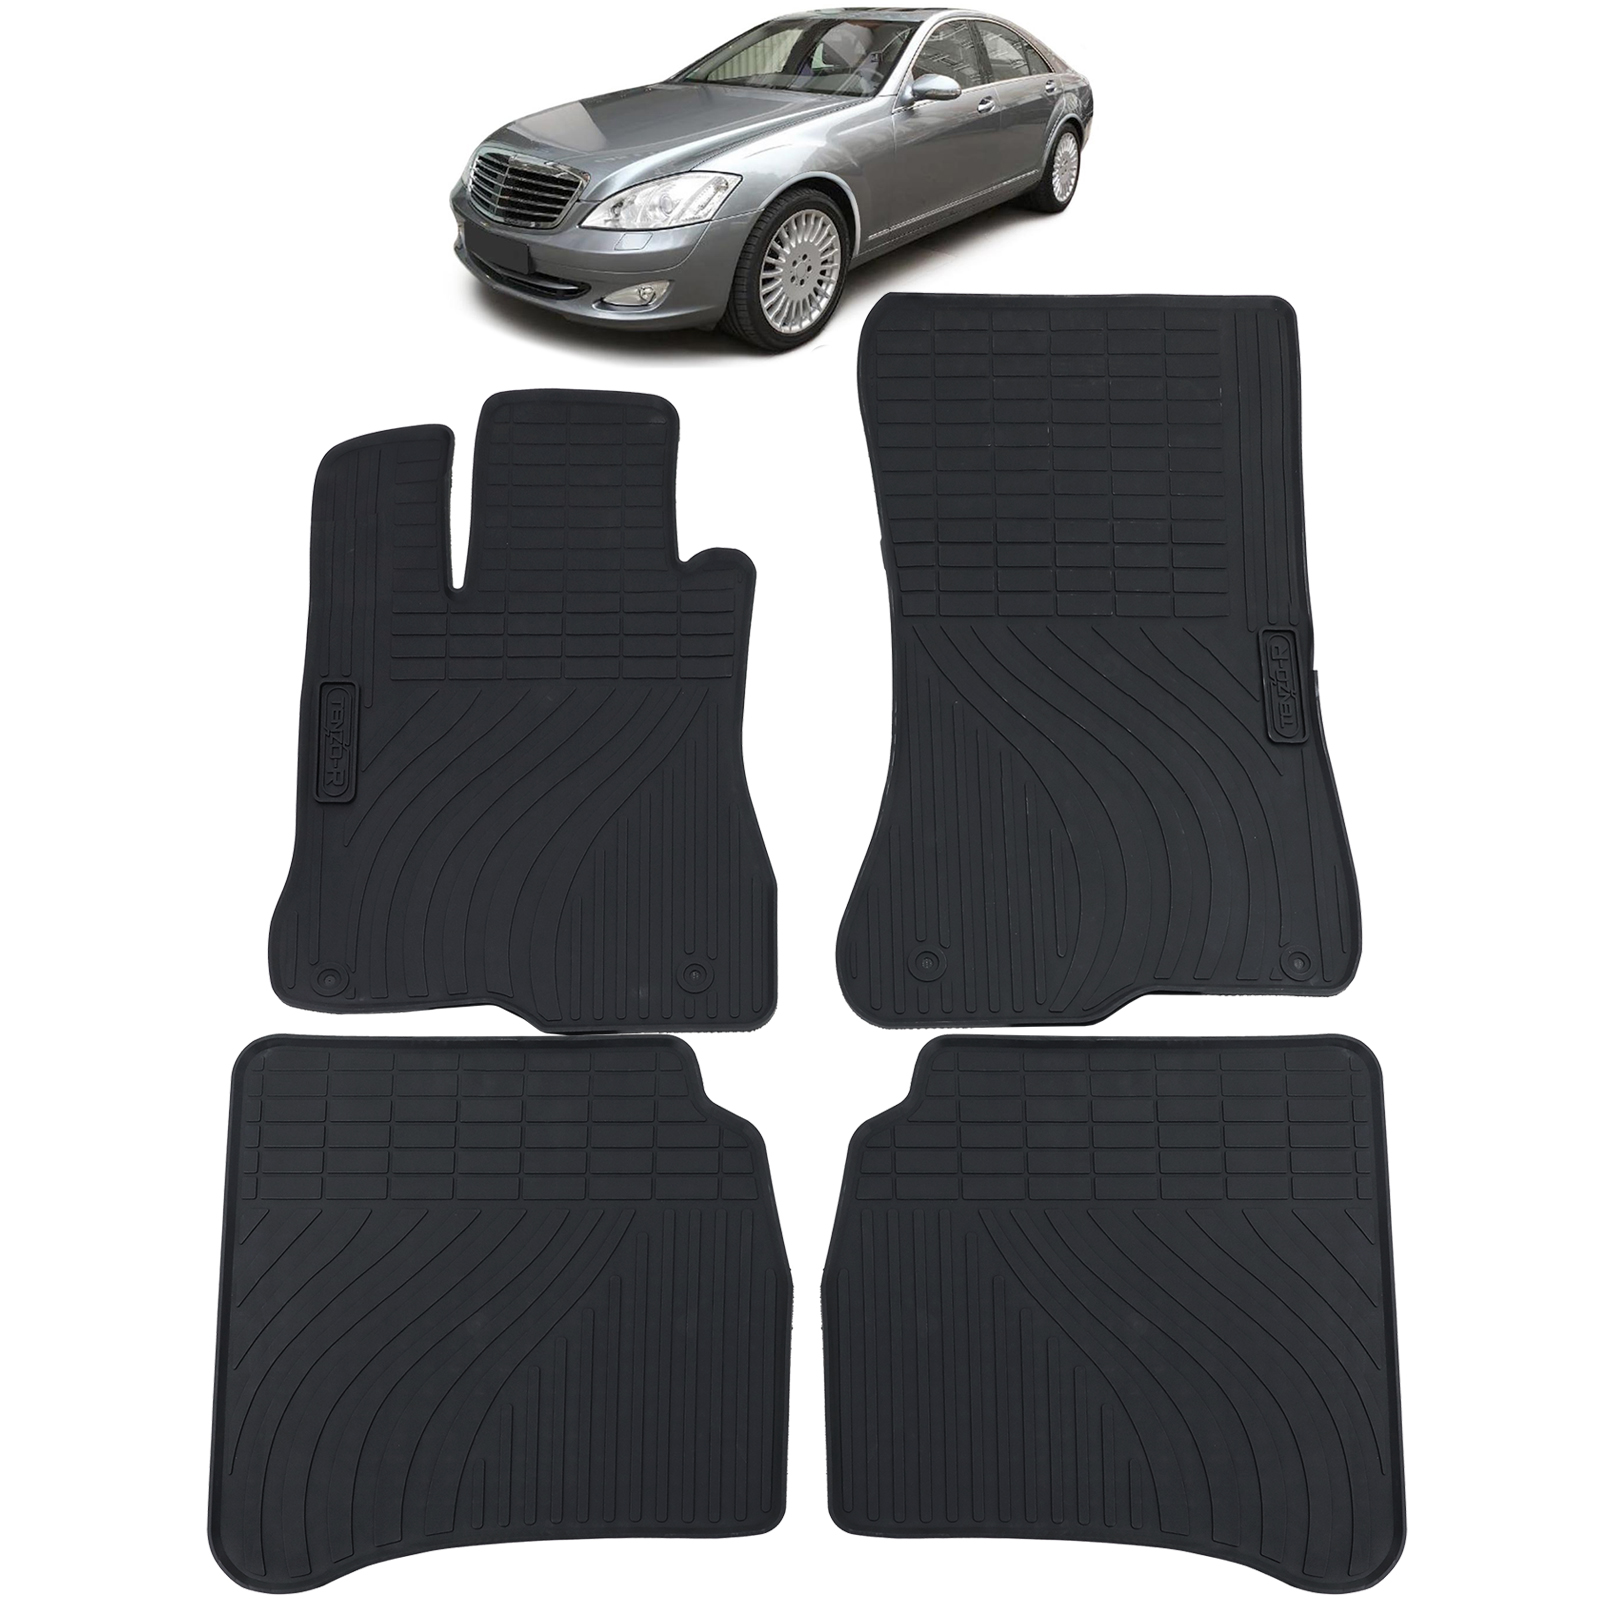 Auto Gummi Fußmatten Schwarz Premium Set für Mercedes S-Klasse W221 05-13  kaufen